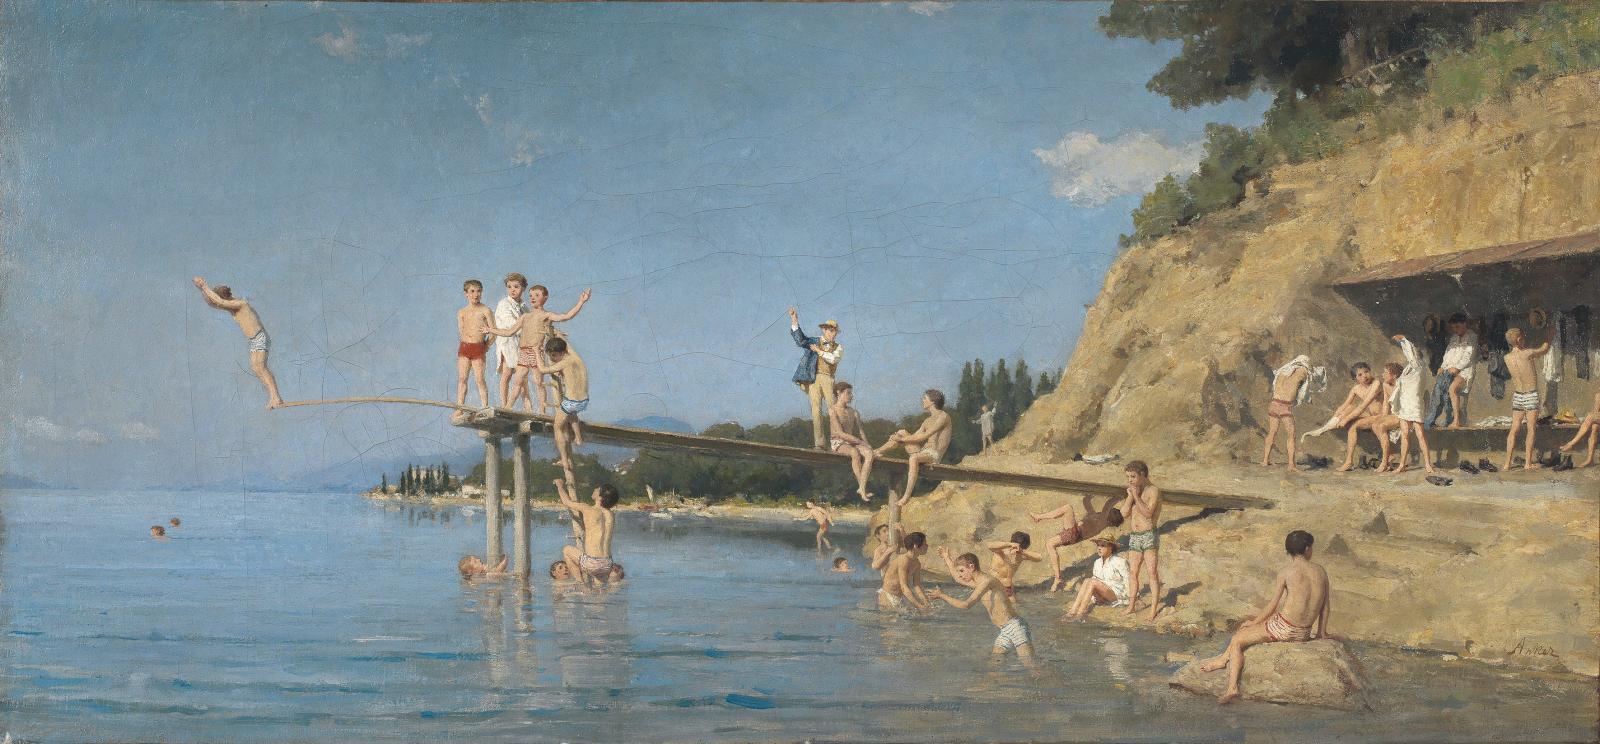 Anker au bain Le Suisse Albert Anker (1831-1910) occupe une place de premier ordre dans ce catalogue, représenté par huit toiles et dessins. Son talen